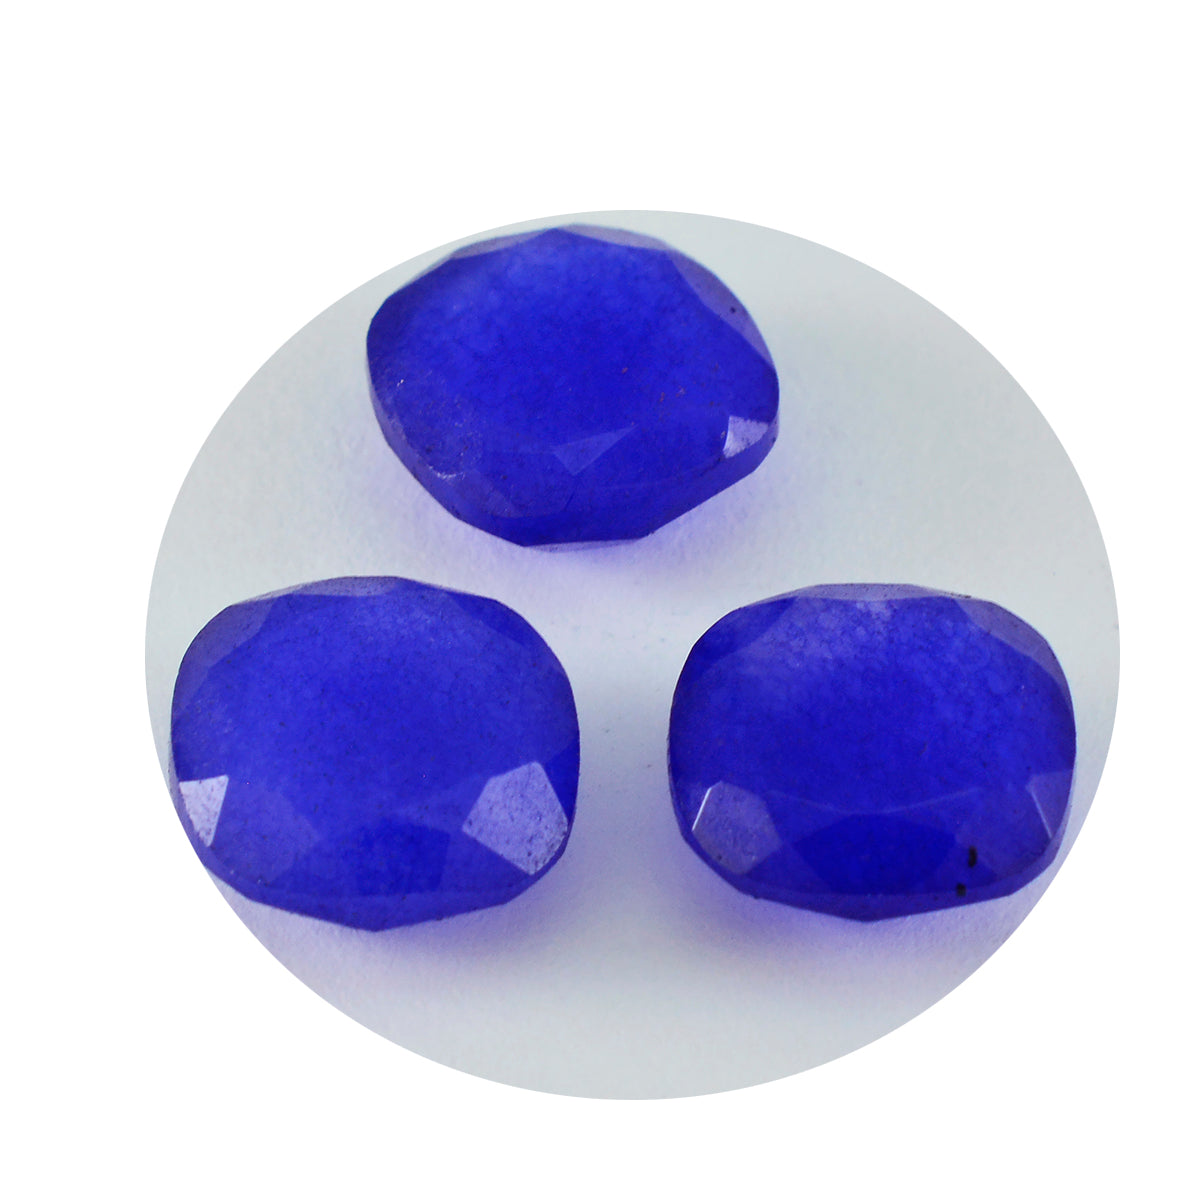 riyogems 1шт настоящая синяя яшма граненая 11x11 мм в форме подушки качество A1 драгоценный камень